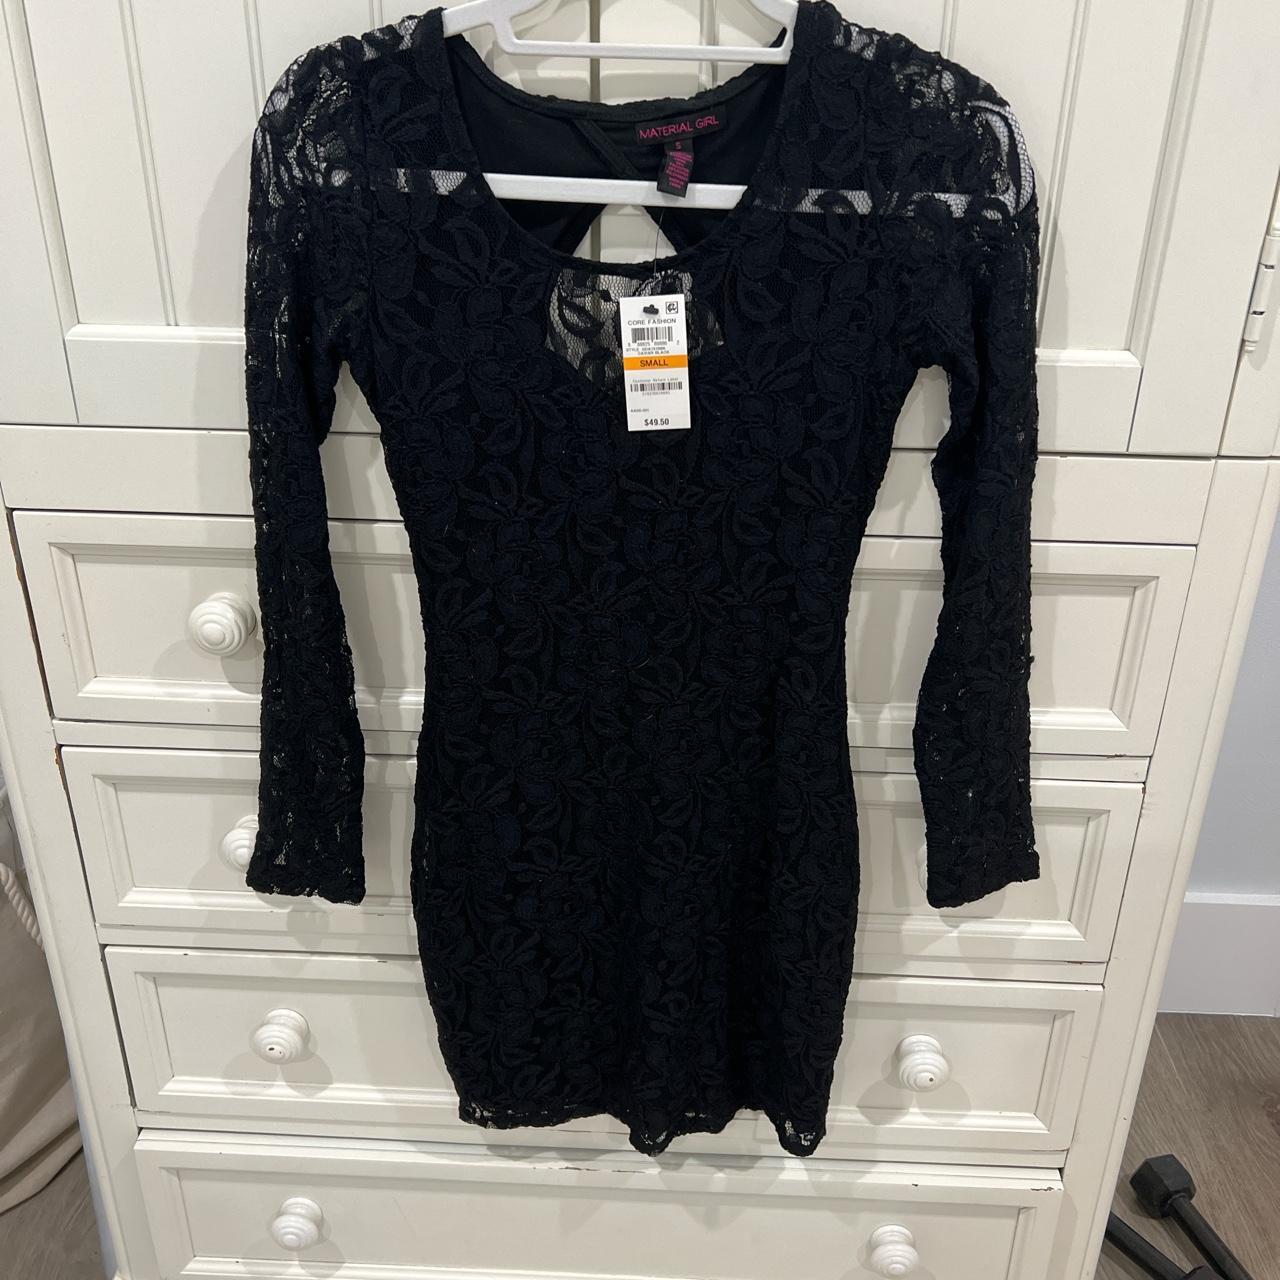 Macy's Women's Black Dress | Depop